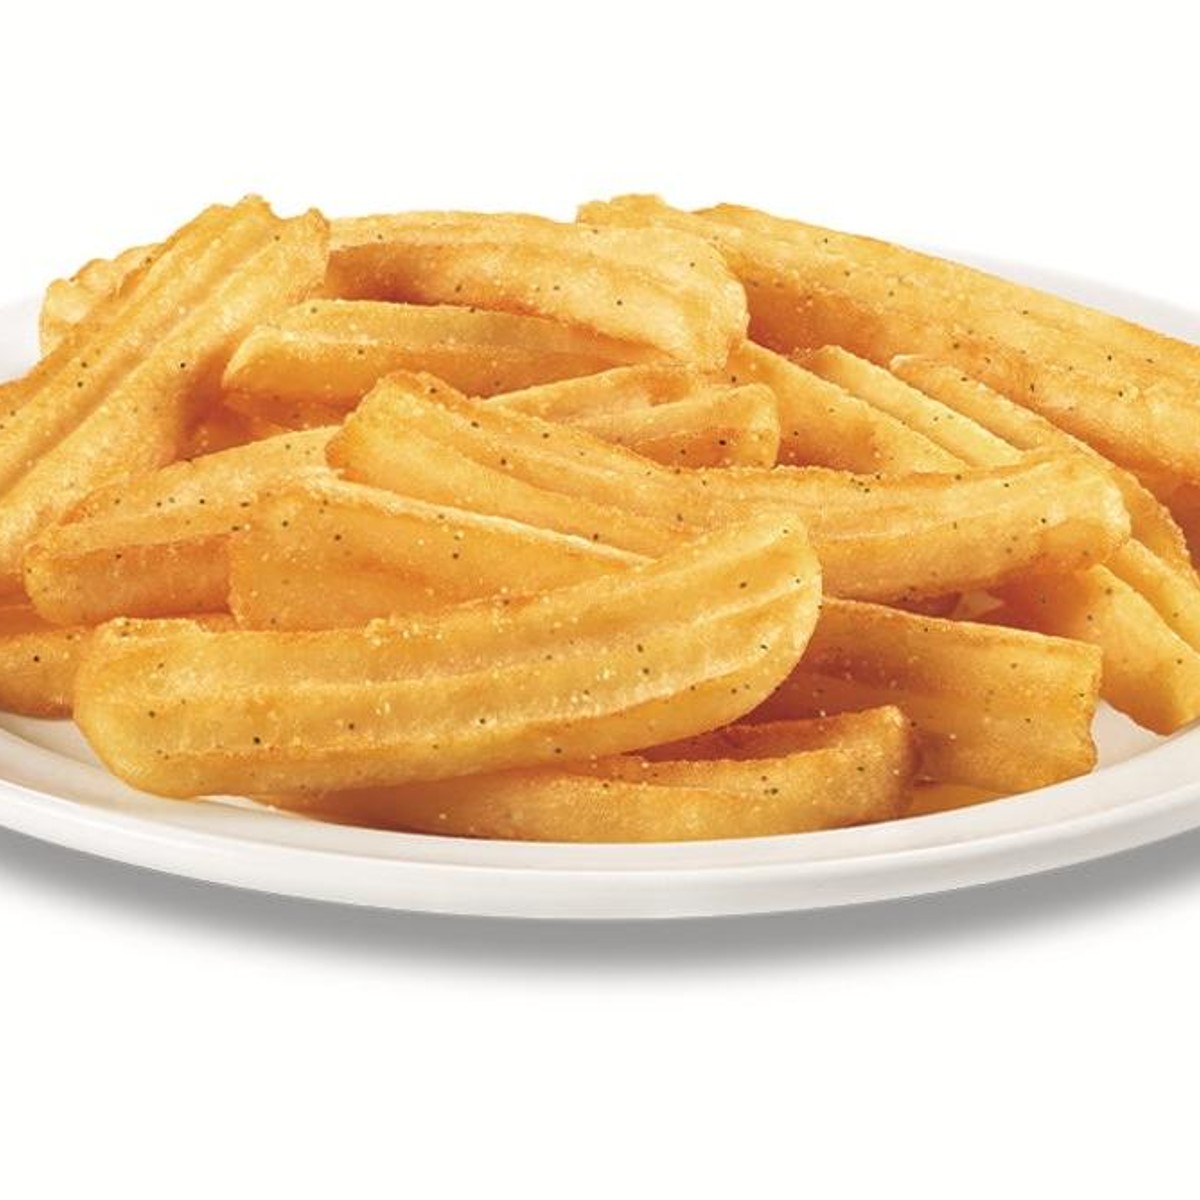 Wavy Cut French Fries